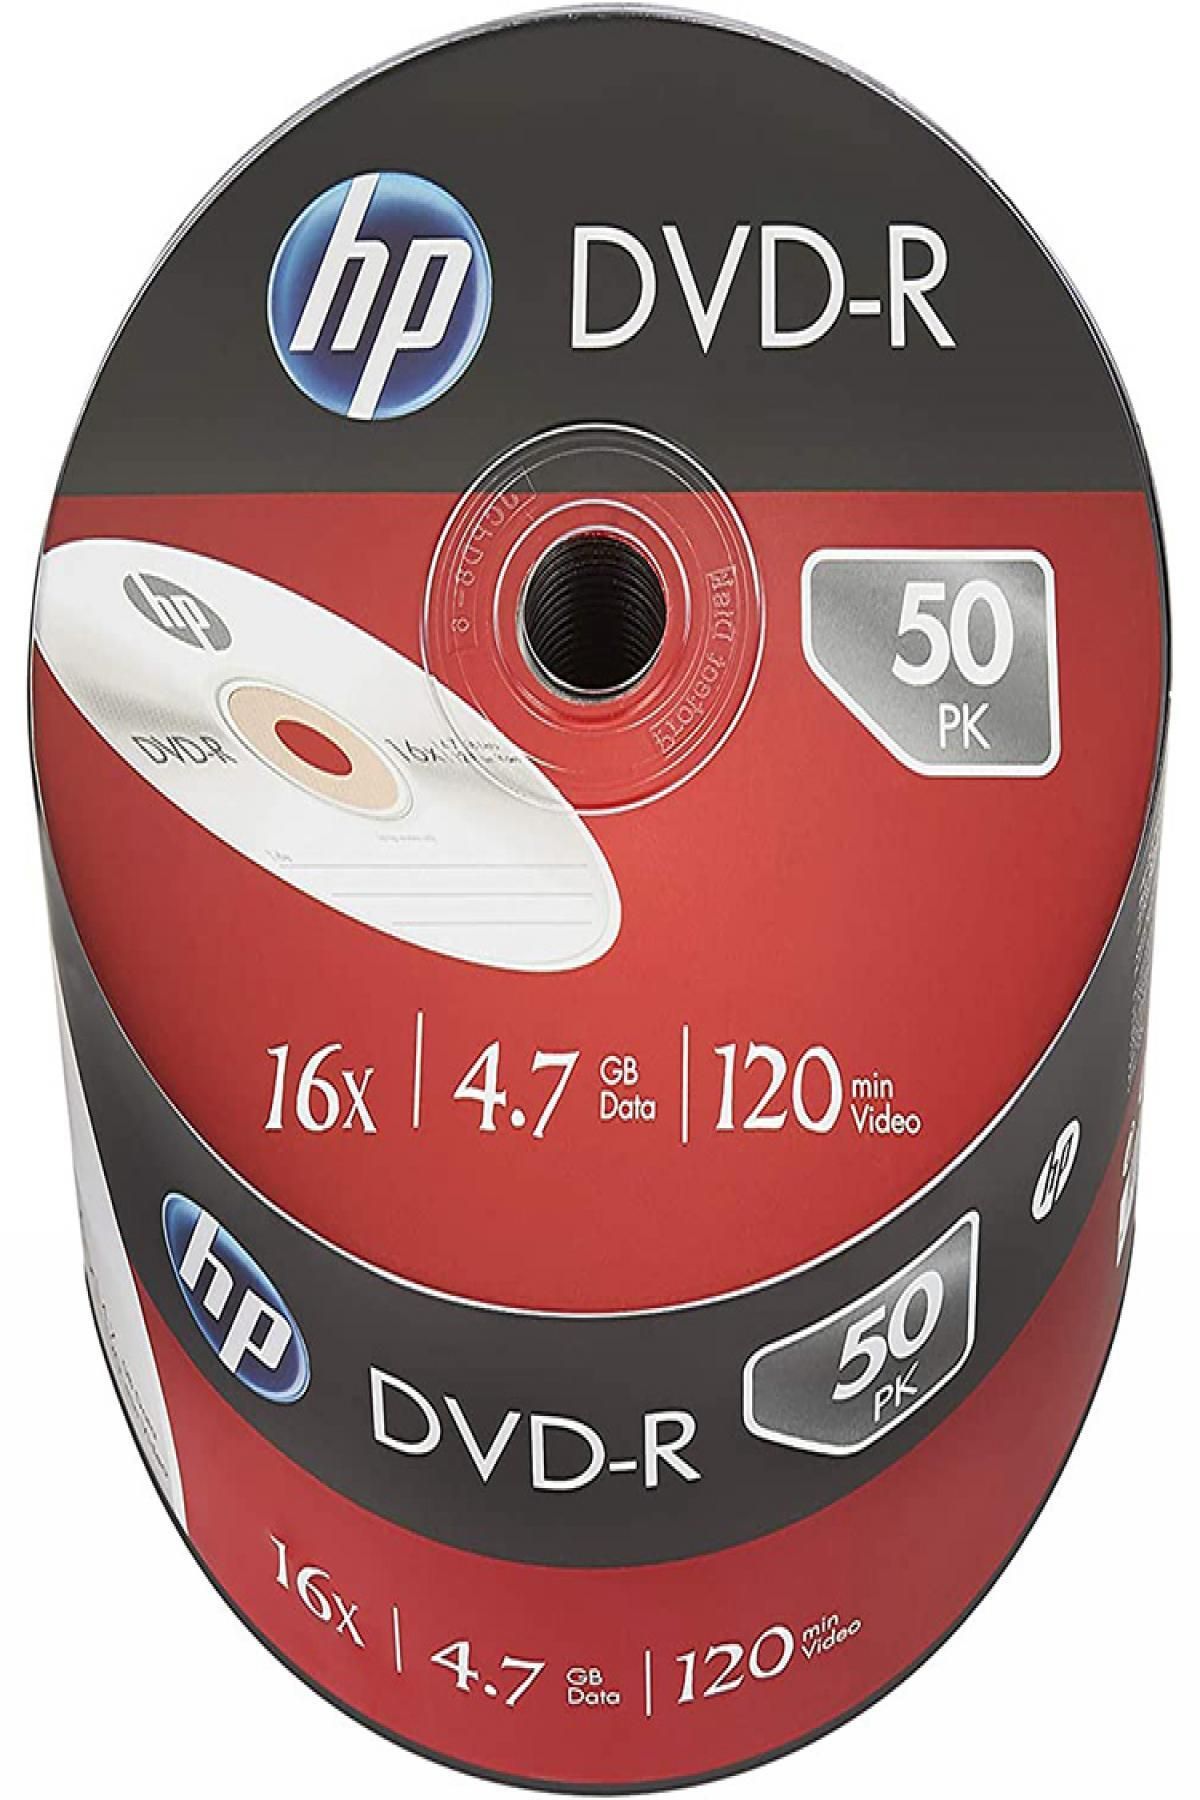 GPTURKGRUP Hp Dvd-R 4.7 Gb Data 120 Min Video16X Shrink 50Li